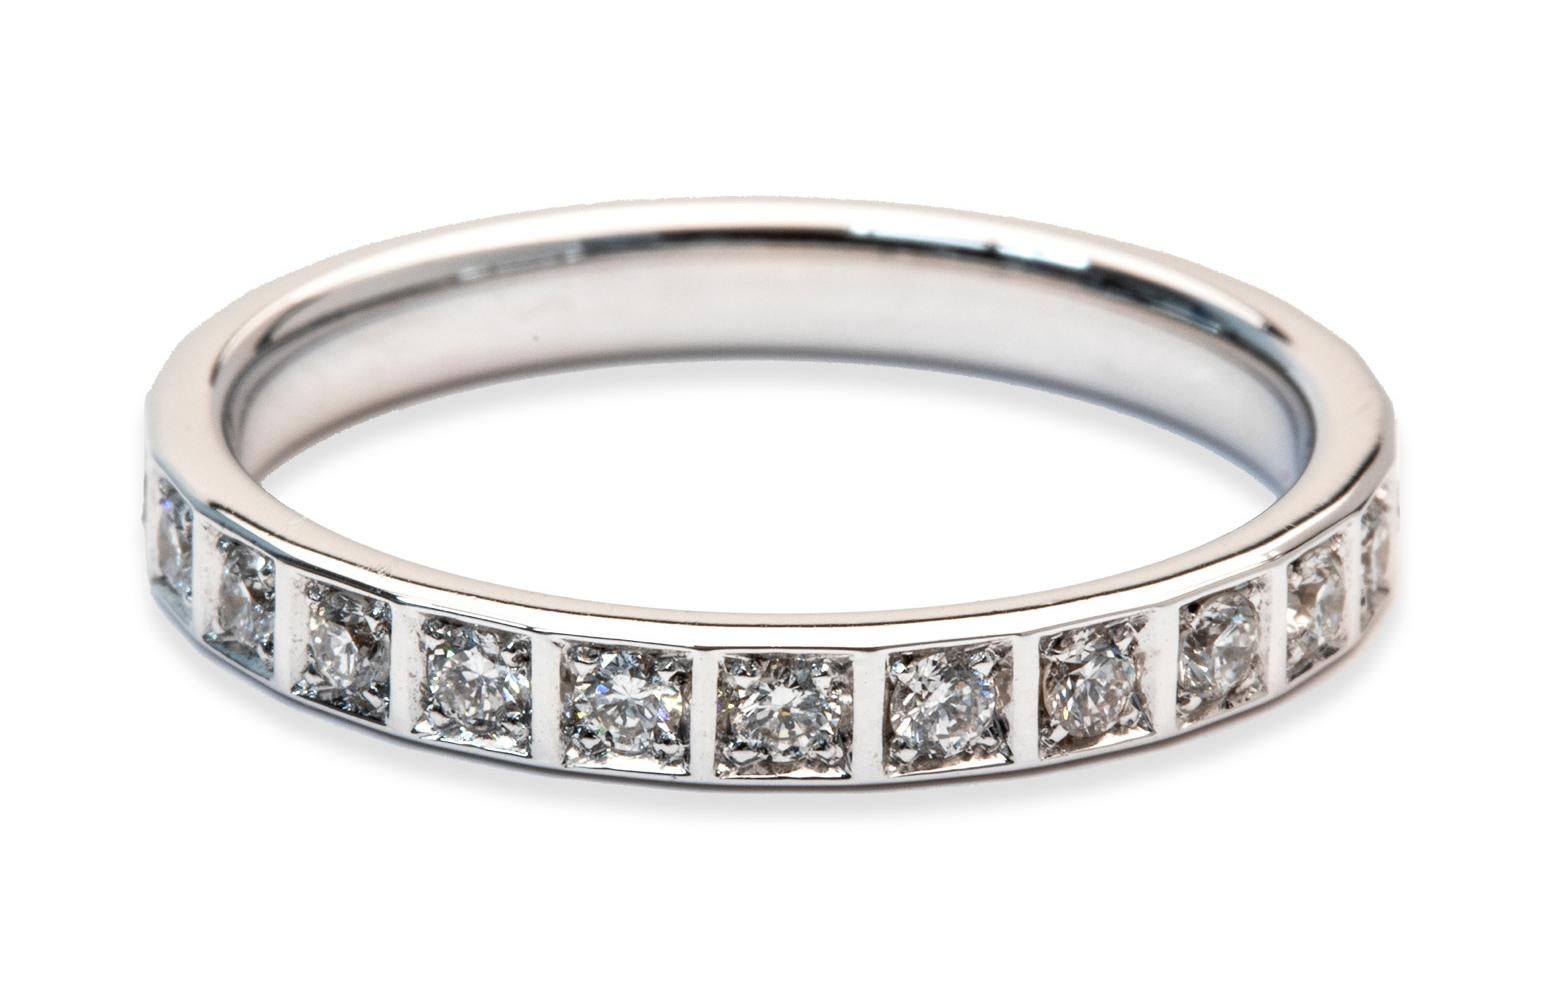 Dieser exquisite, in Italien gefertigte Ring ist ein wahres Zeugnis von Kunstfertigkeit und Raffinesse. Das 0,95-karätige Princess Illusion Eternity Band besticht durch ein faszinierendes Zusammenspiel von Diamanten, die in ein Band aus 18 Karat